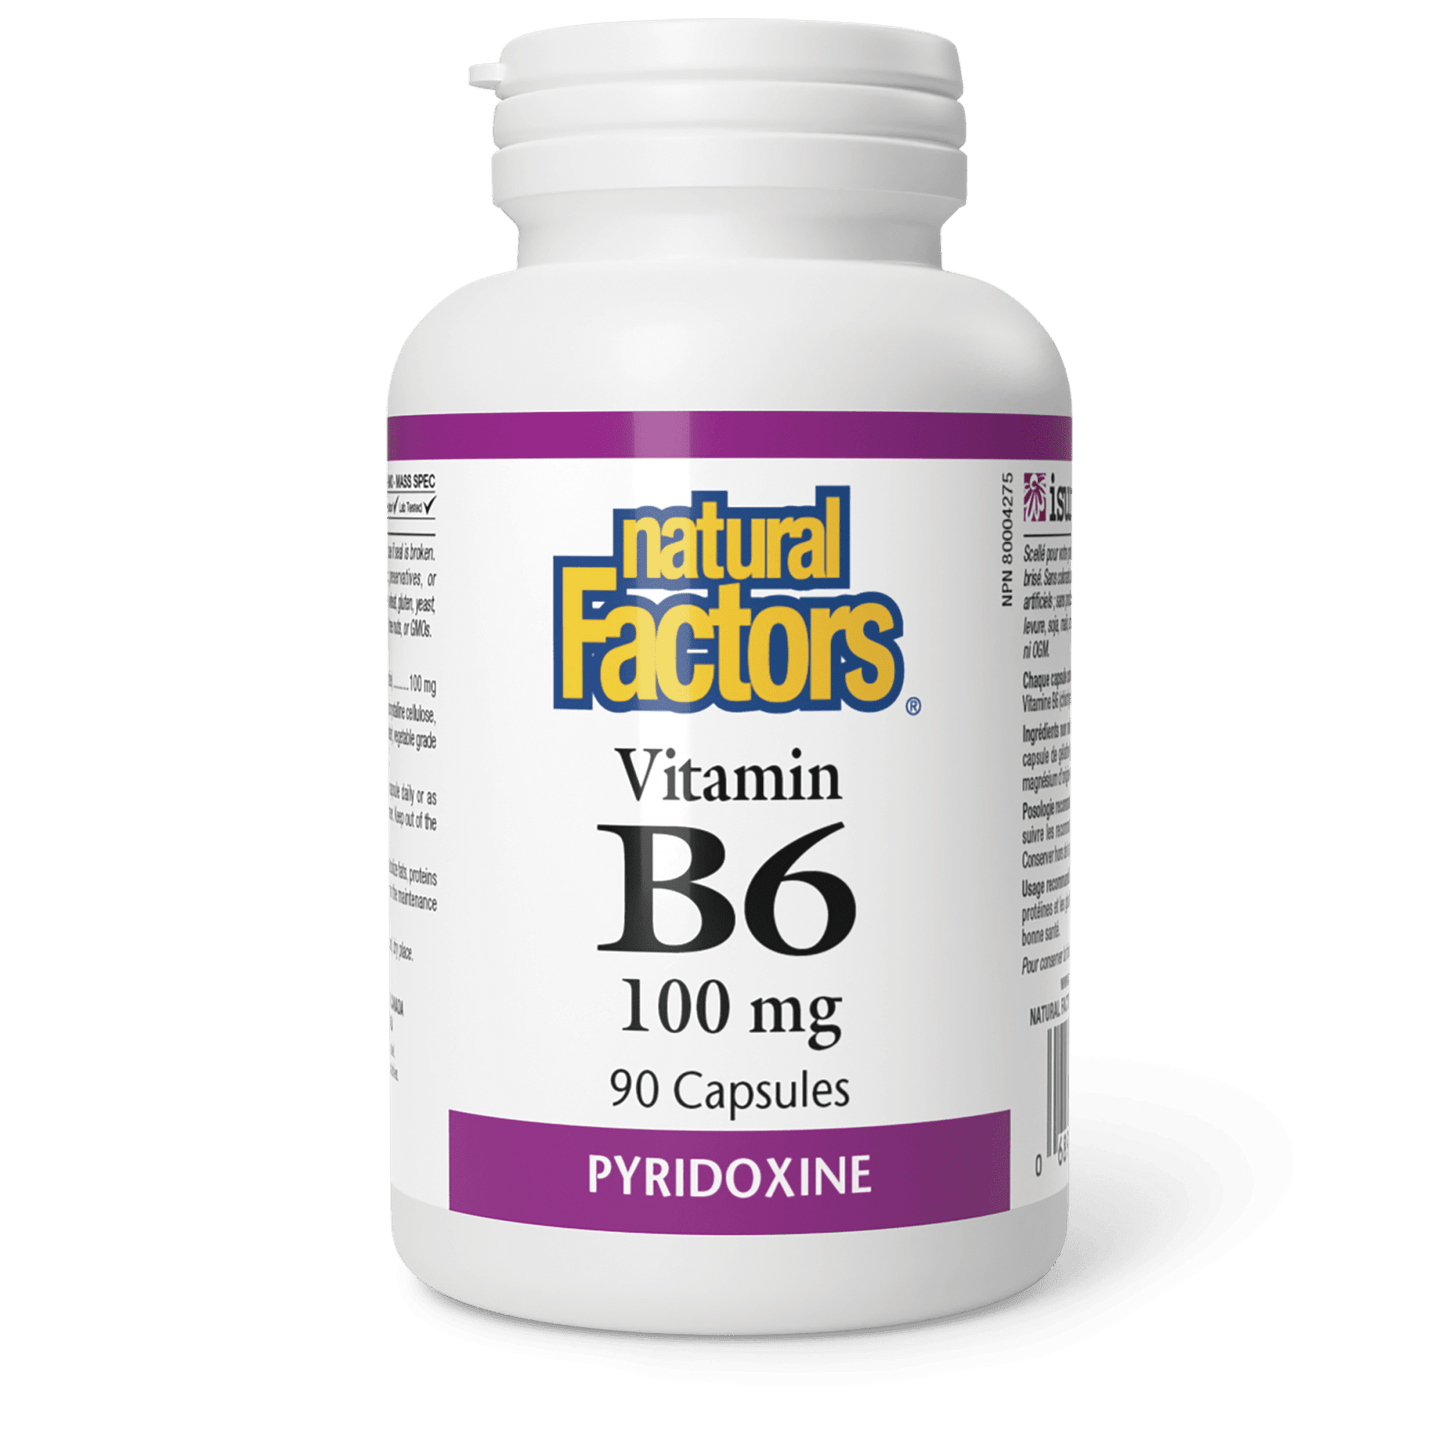 Vitamin B6 100 mg, Natural Factors|v|image|1238